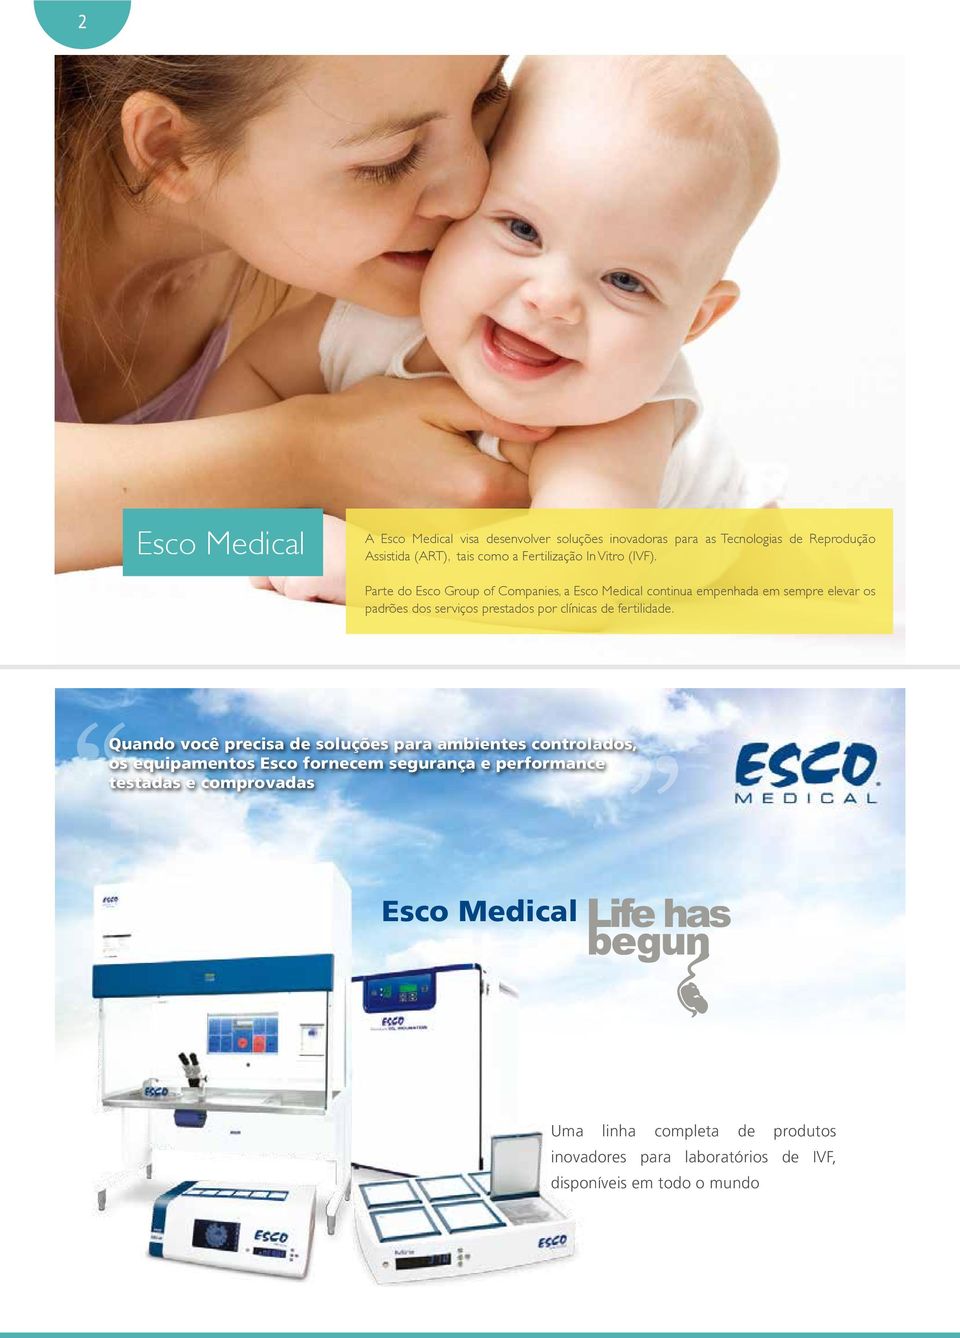 Parte do Esco Group of Companies, a Esco Medical continua empenhada em sempre elevar os padrões dos serviços prestados por clínicas de